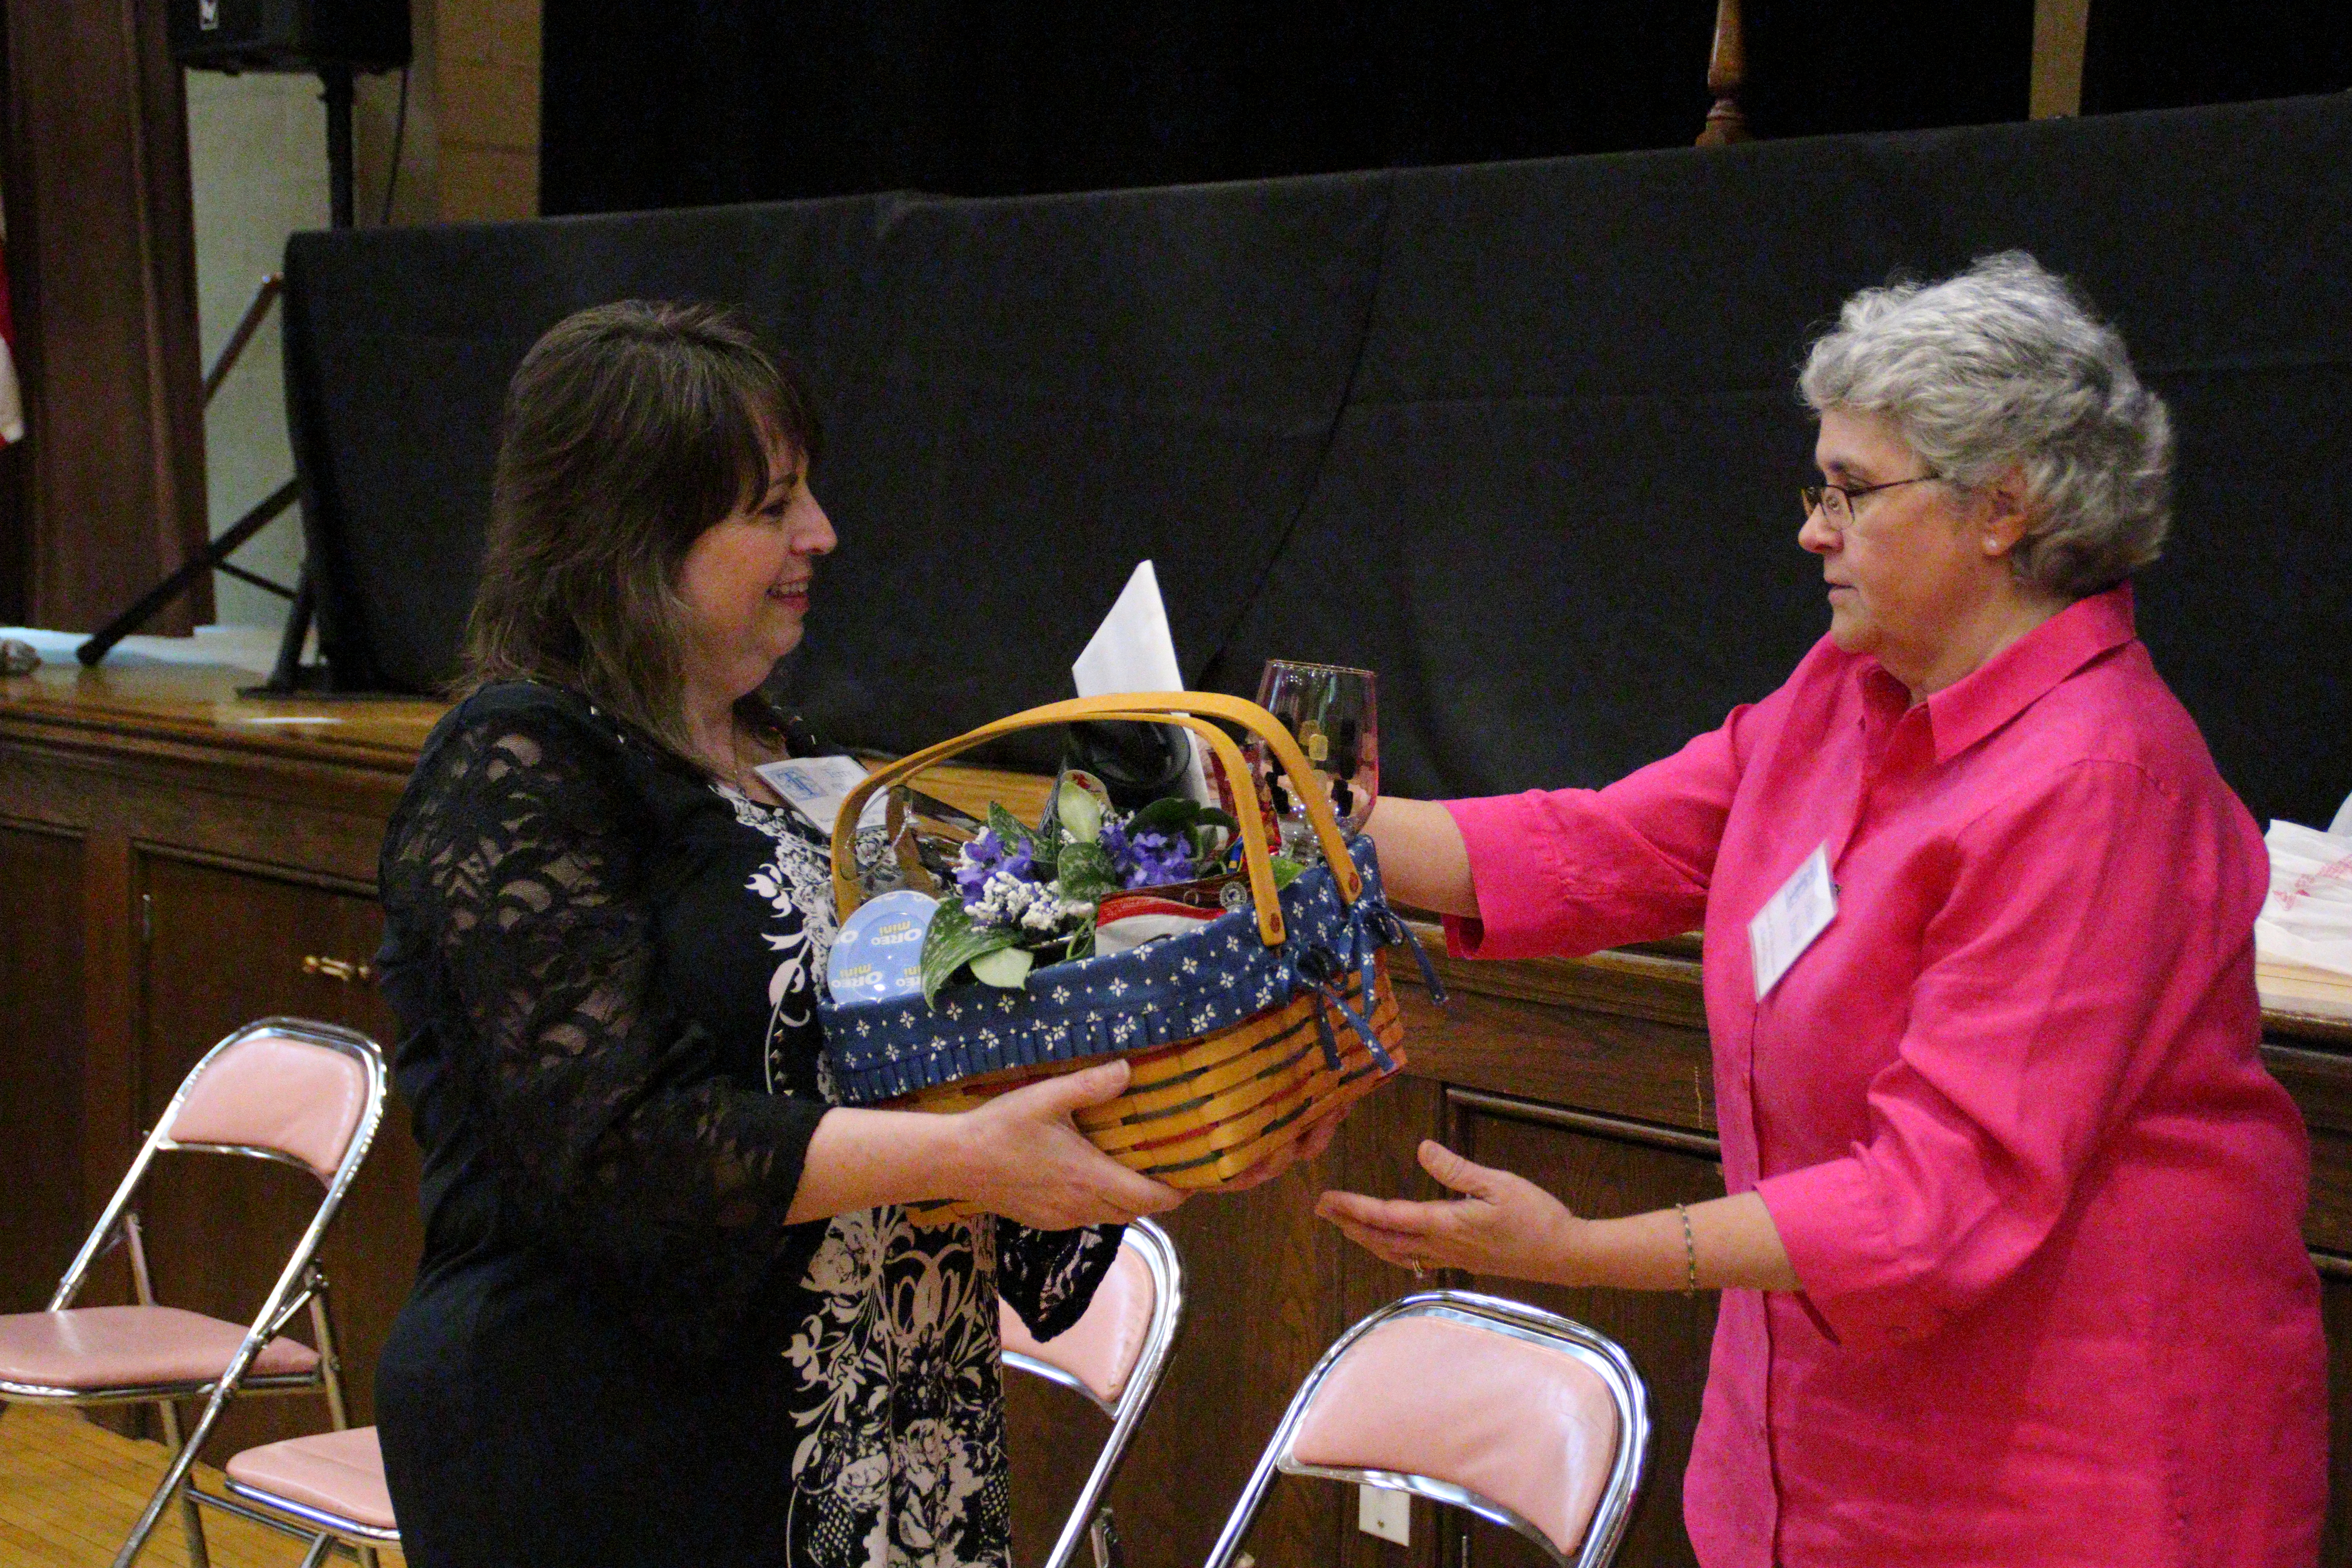 Basket presented to winning bidder